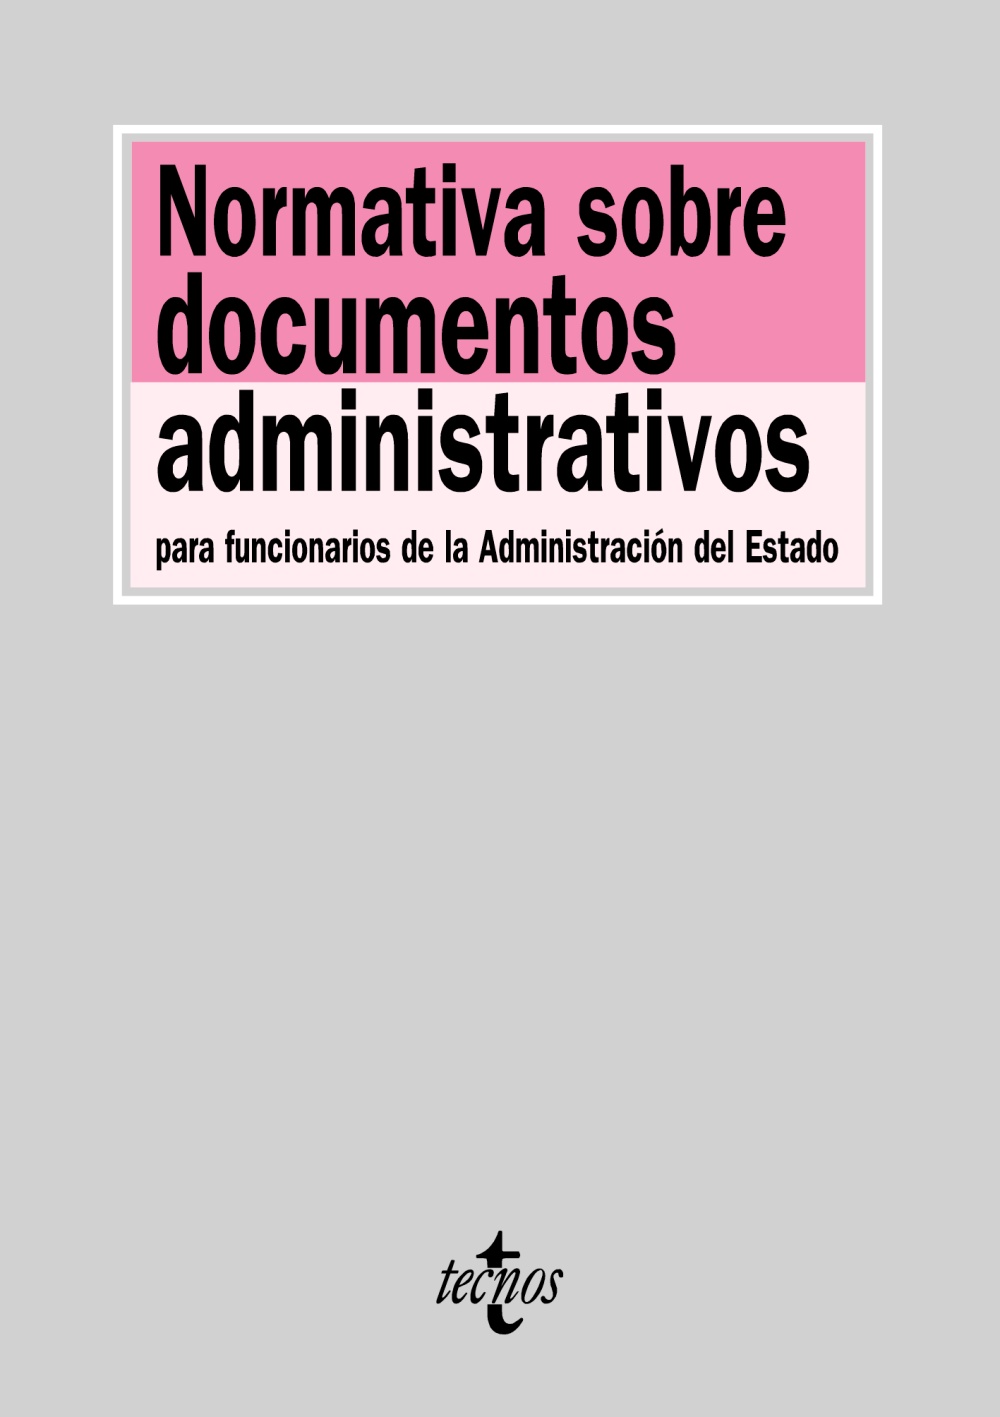 Normativa sobre documentos administrativos para funcionarios de la Administración del Estado